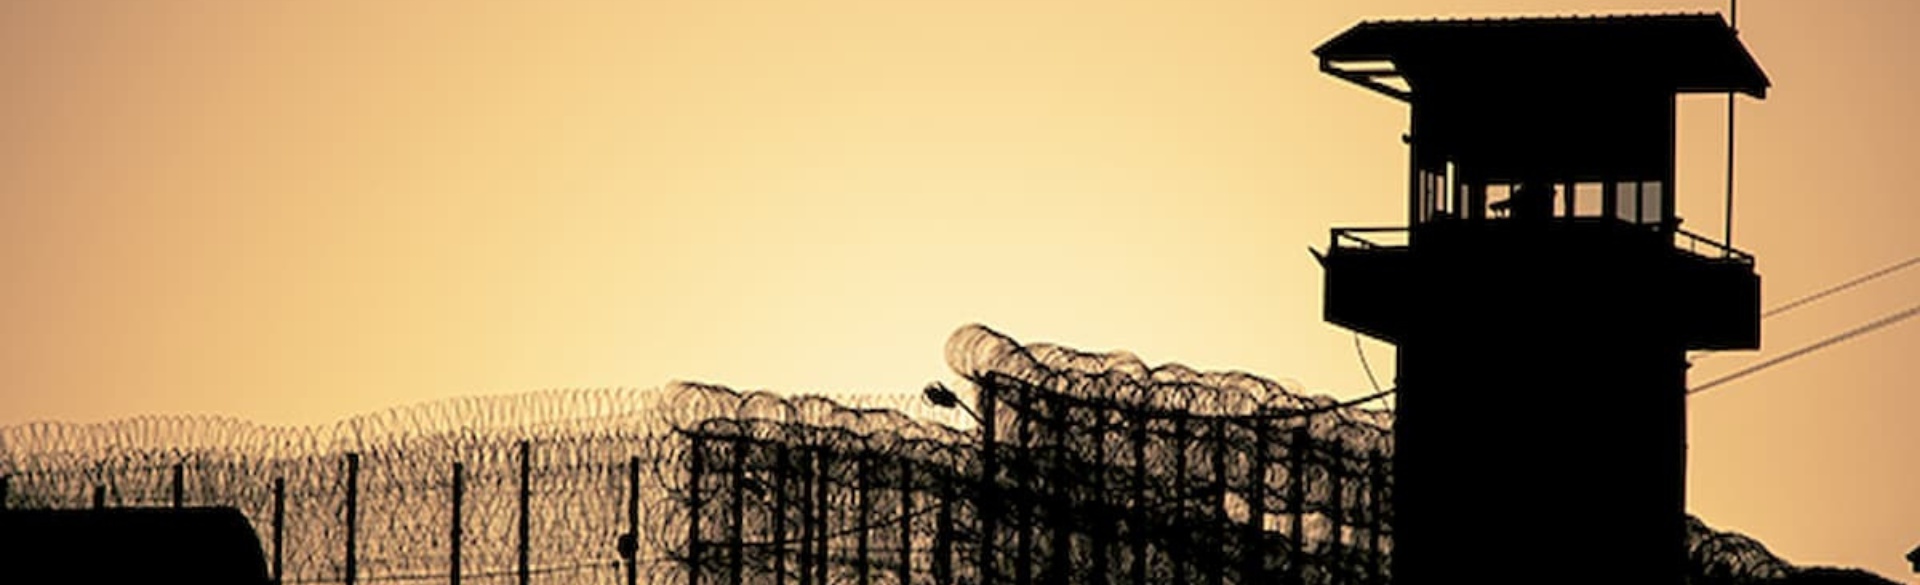 Prison walls